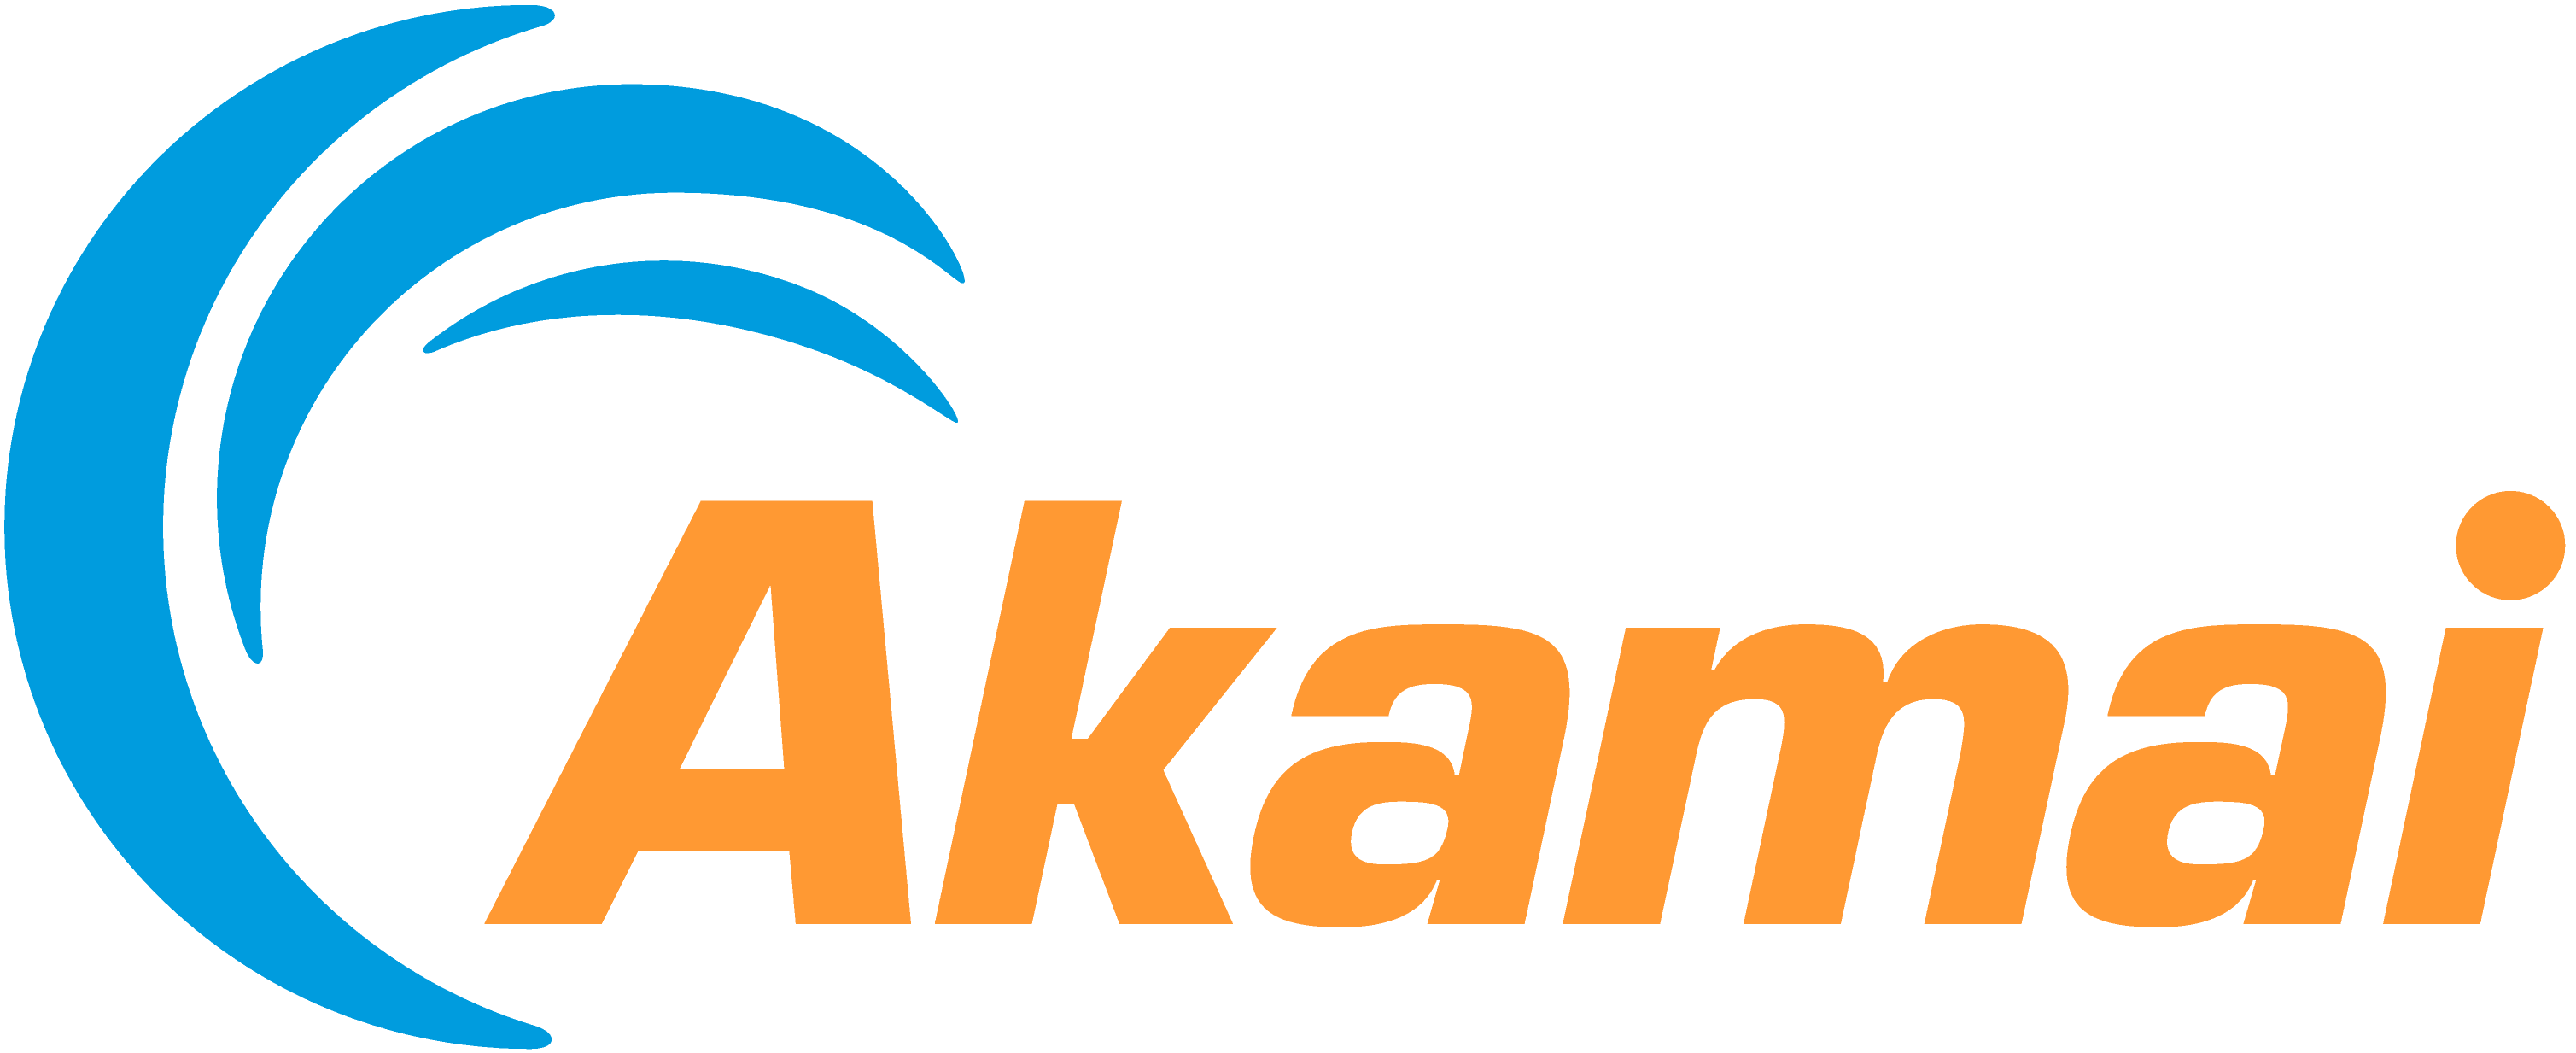 Akamai vendor logo